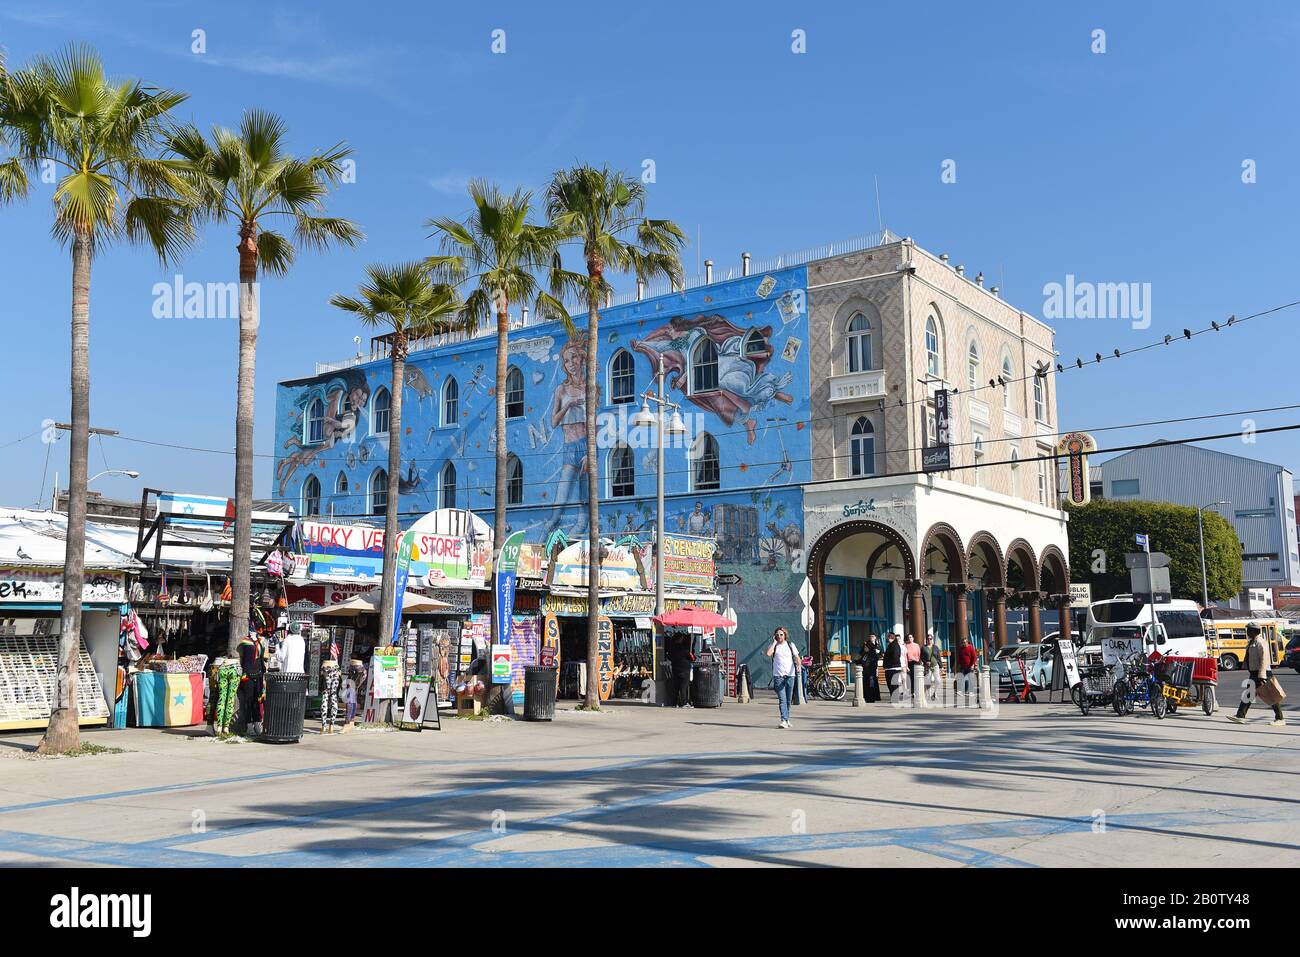 Venezia, CALIFORNIA - 17 FEB 2020: Surfside Bar e altri negozi sul lungomare di Venezia Beach, California. Foto Stock